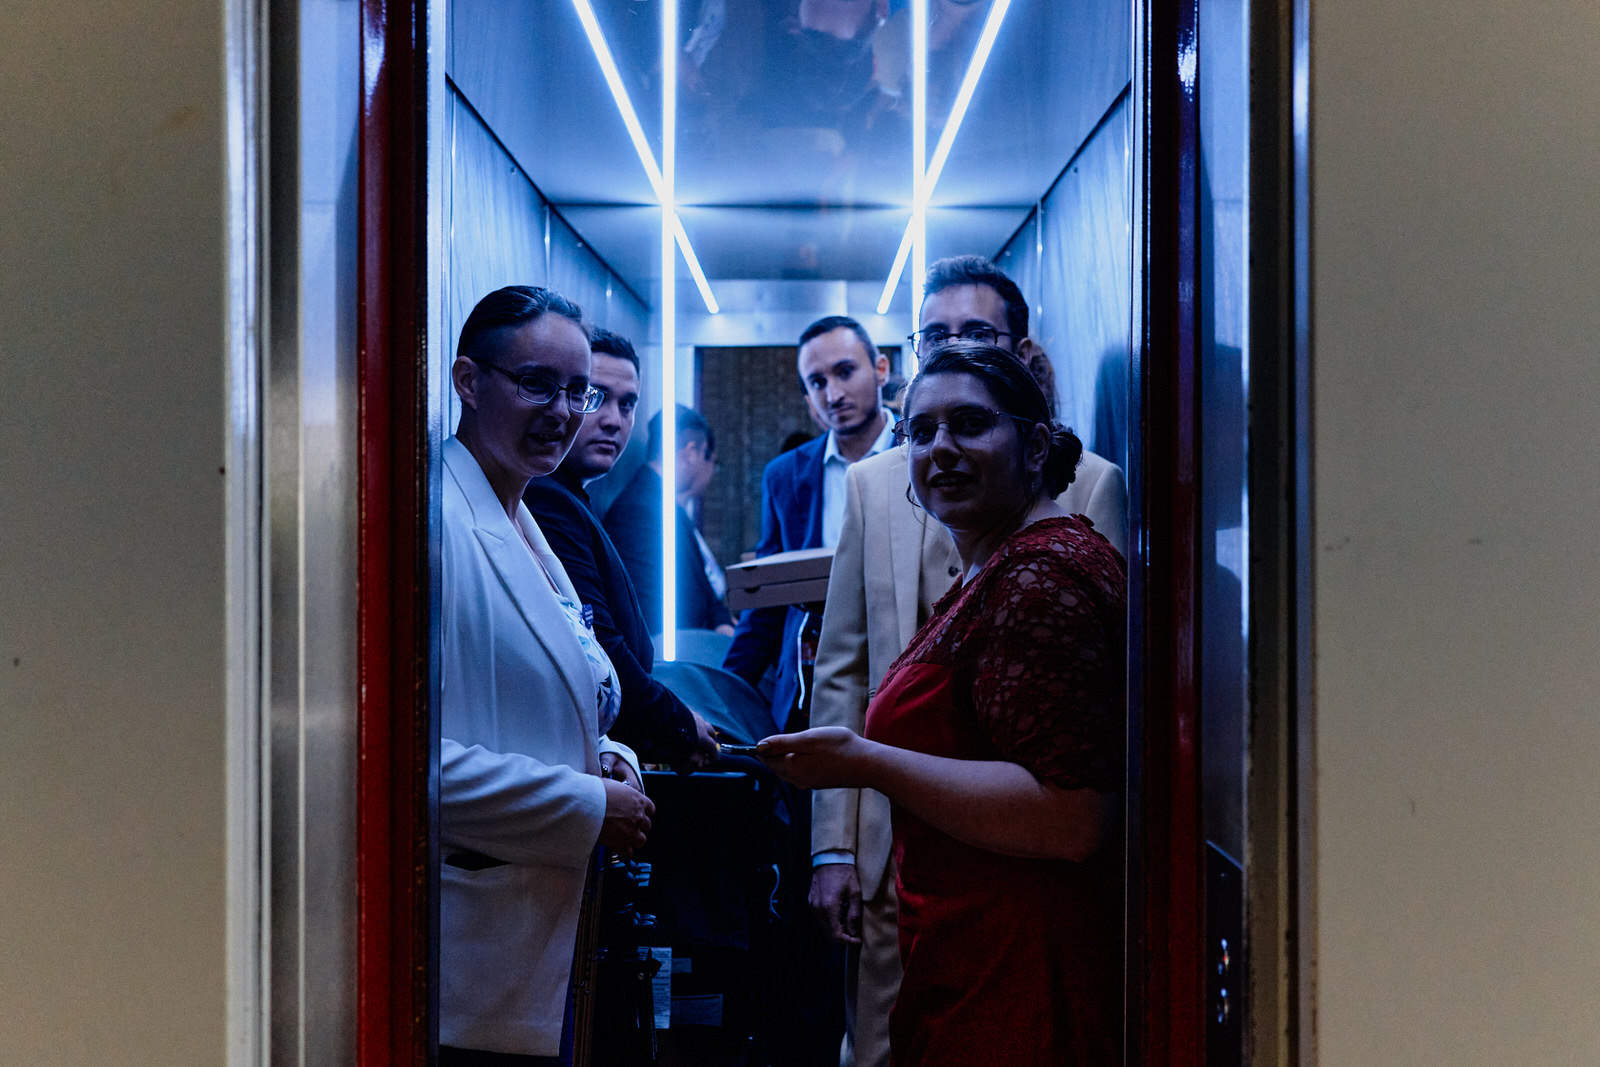 Marié et invités de mariage dans un ascenseur